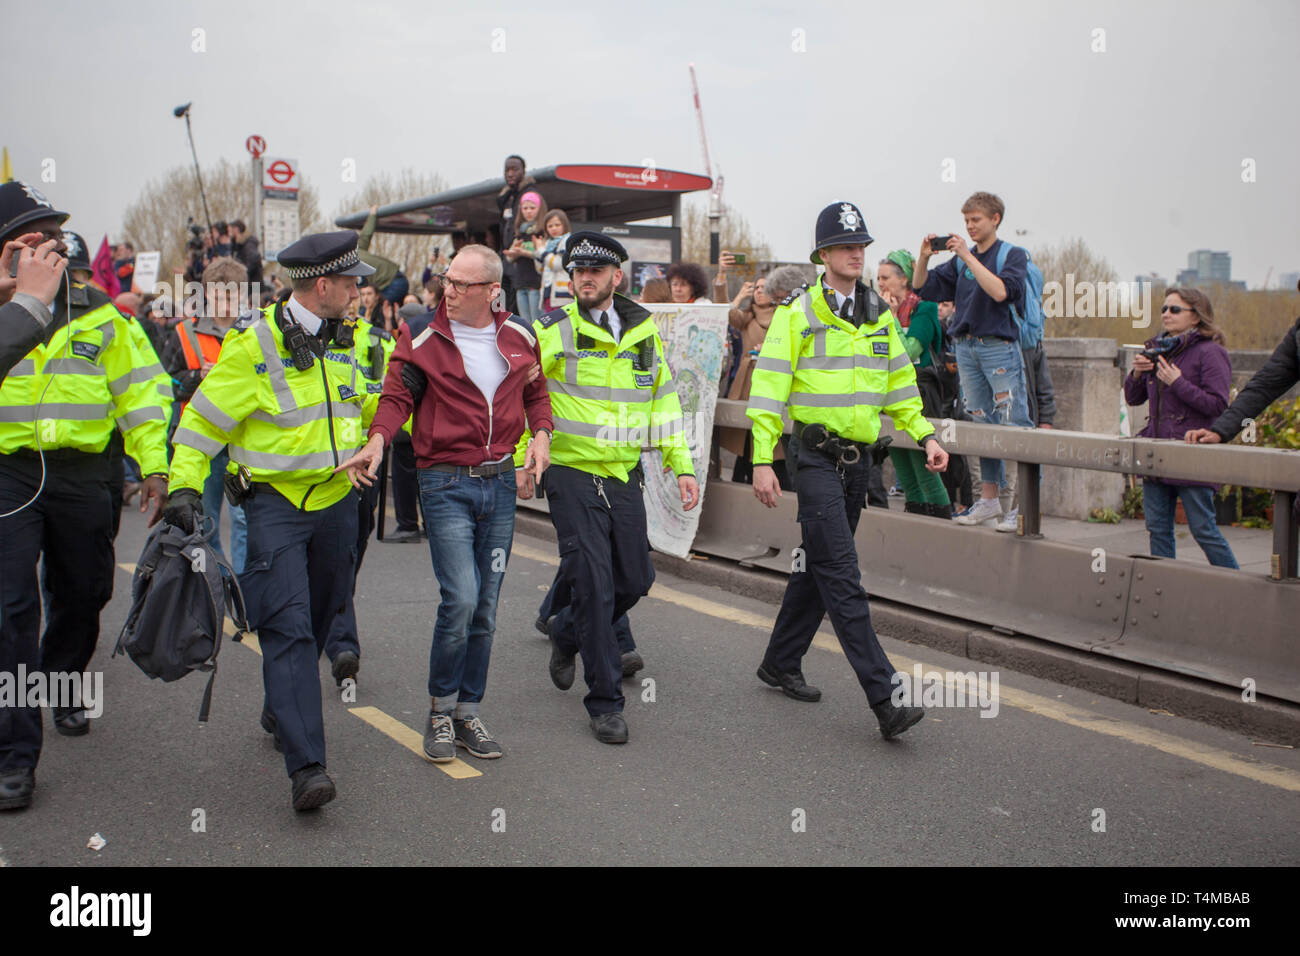 16 de abril de 2019: La rebelión de excitación: manifestante obteniendo lleva esposados por un oficial de policía se reunieron en Waterloo Bridge, Londres.UK Foto de stock